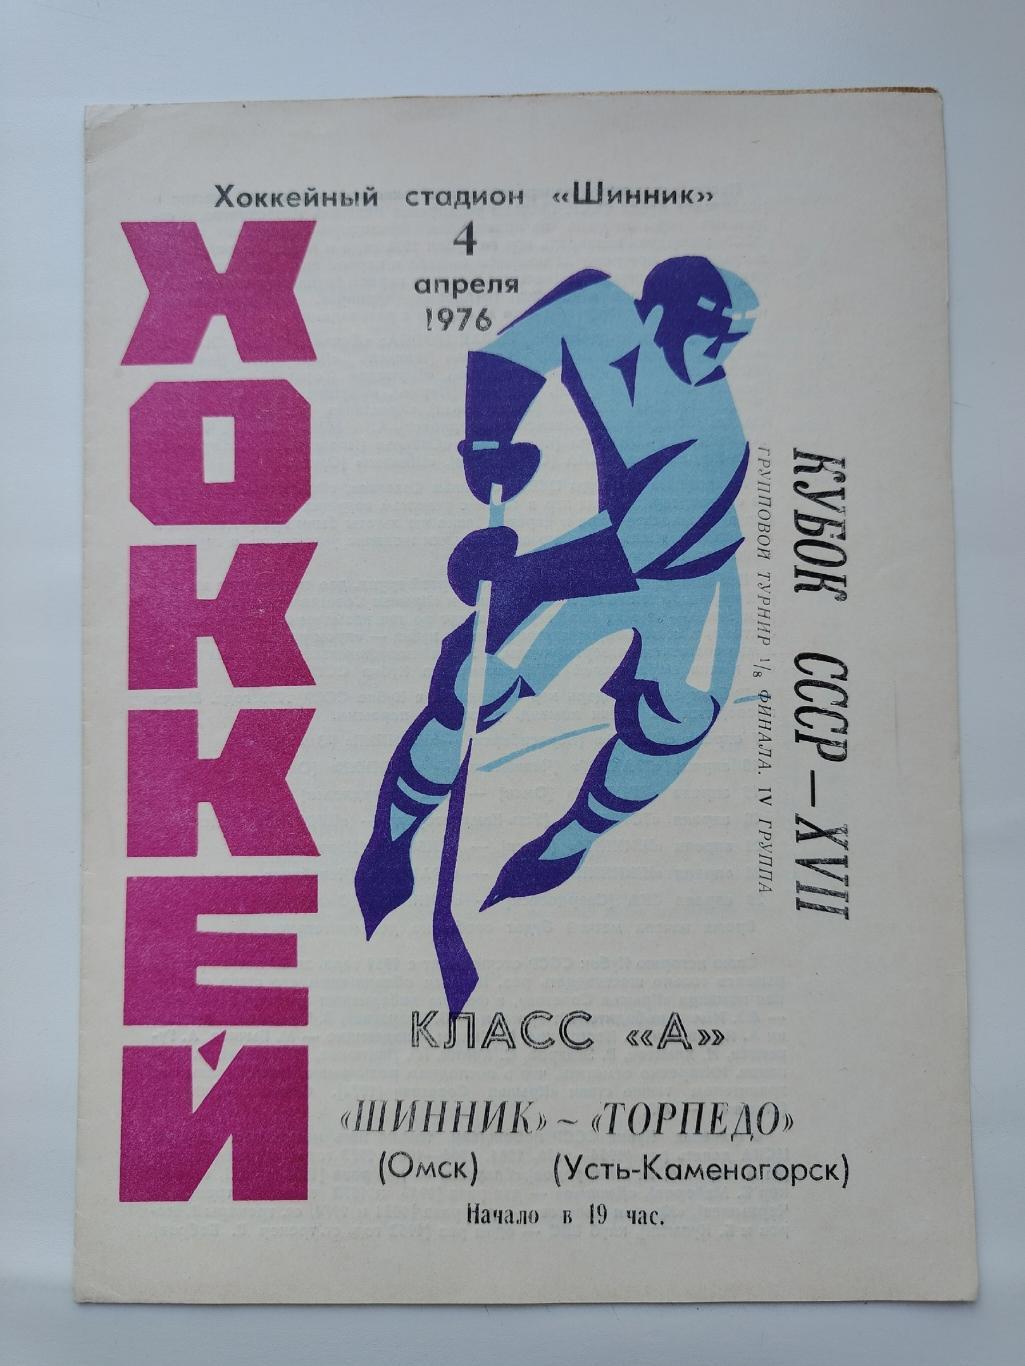 Шинник Омск - Торпедо Усть-Каменогорск 4 апреля 1976 Кубок СССР